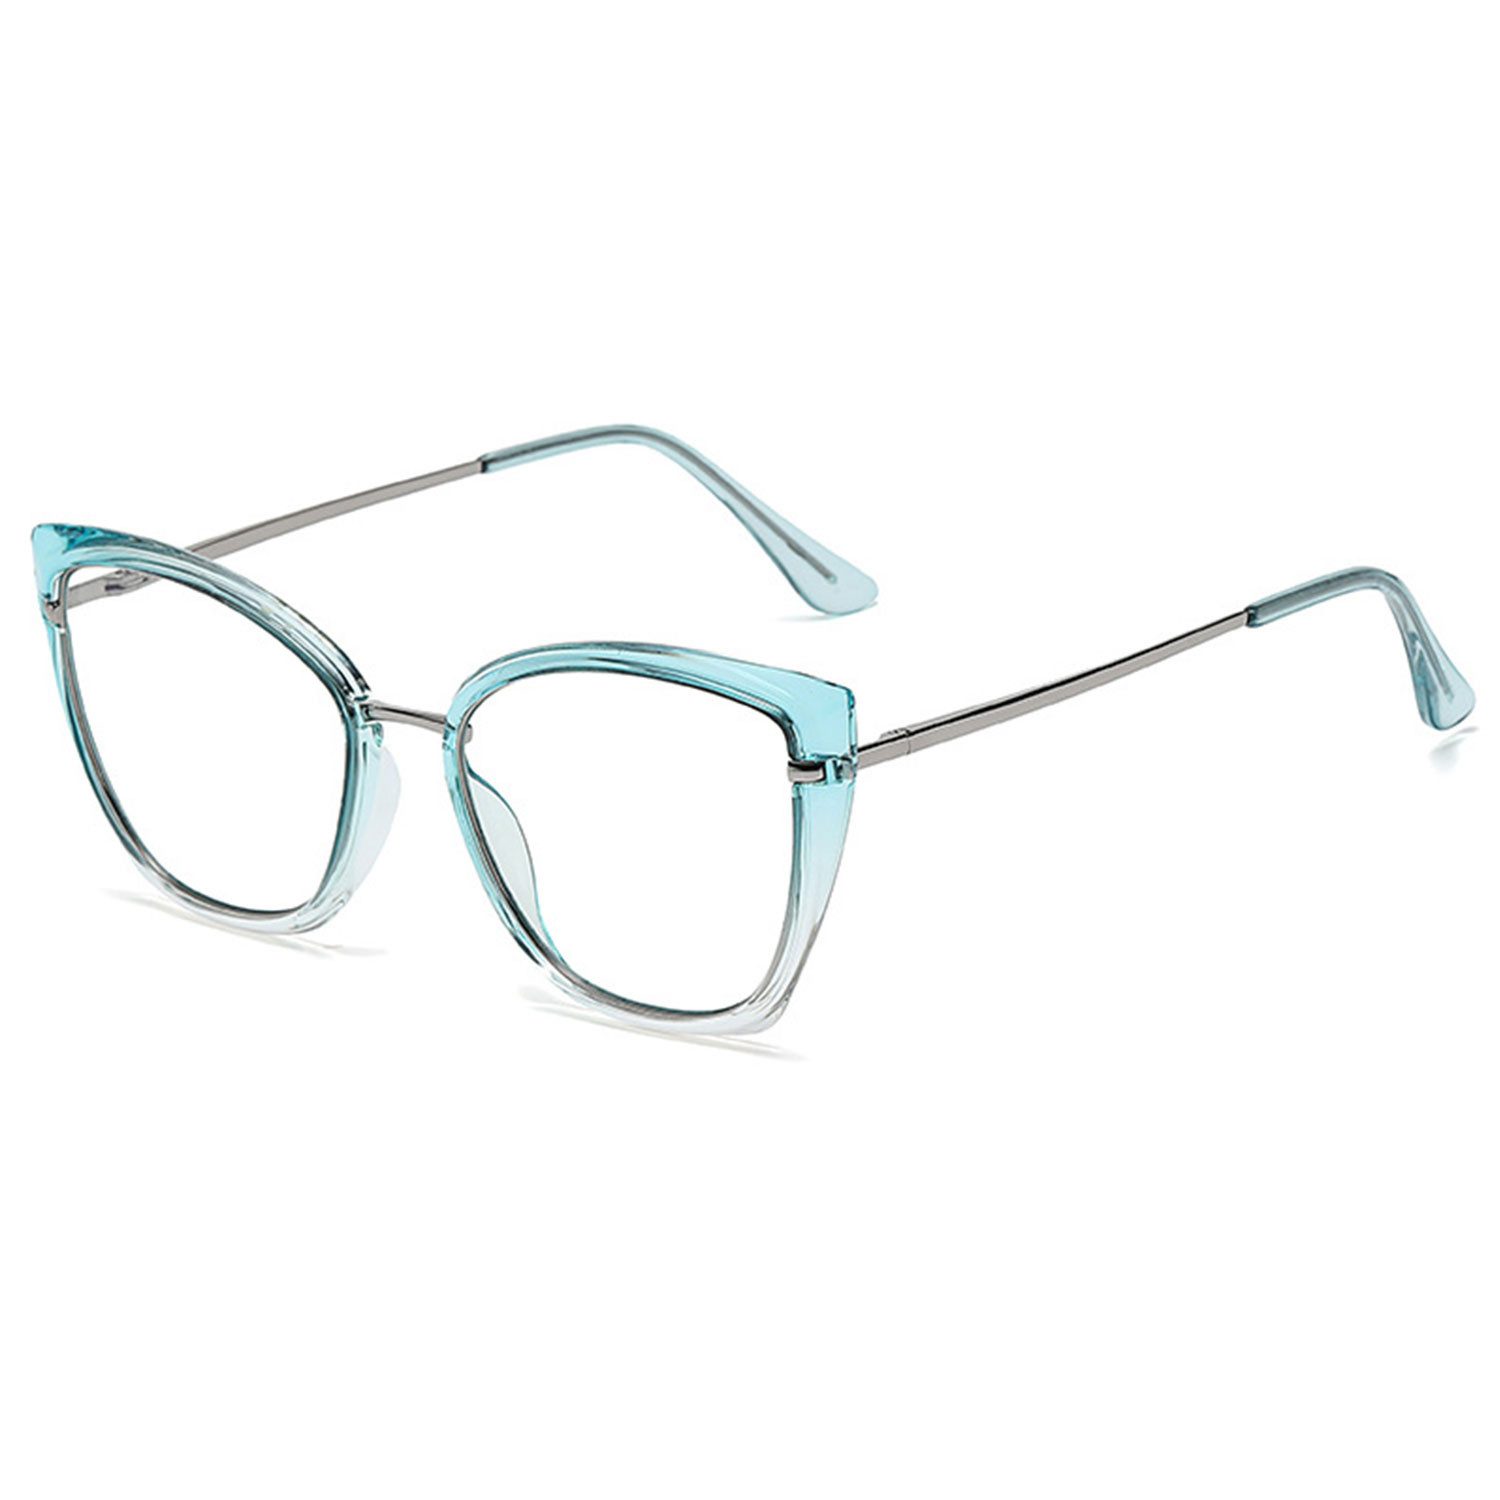 MAGICSHE Brille Mode Anti-Blaulichtbrille Computer Brille Damen, Katzenauge Blaulichtfilter Brille,Schutzbrille für Bildschirme